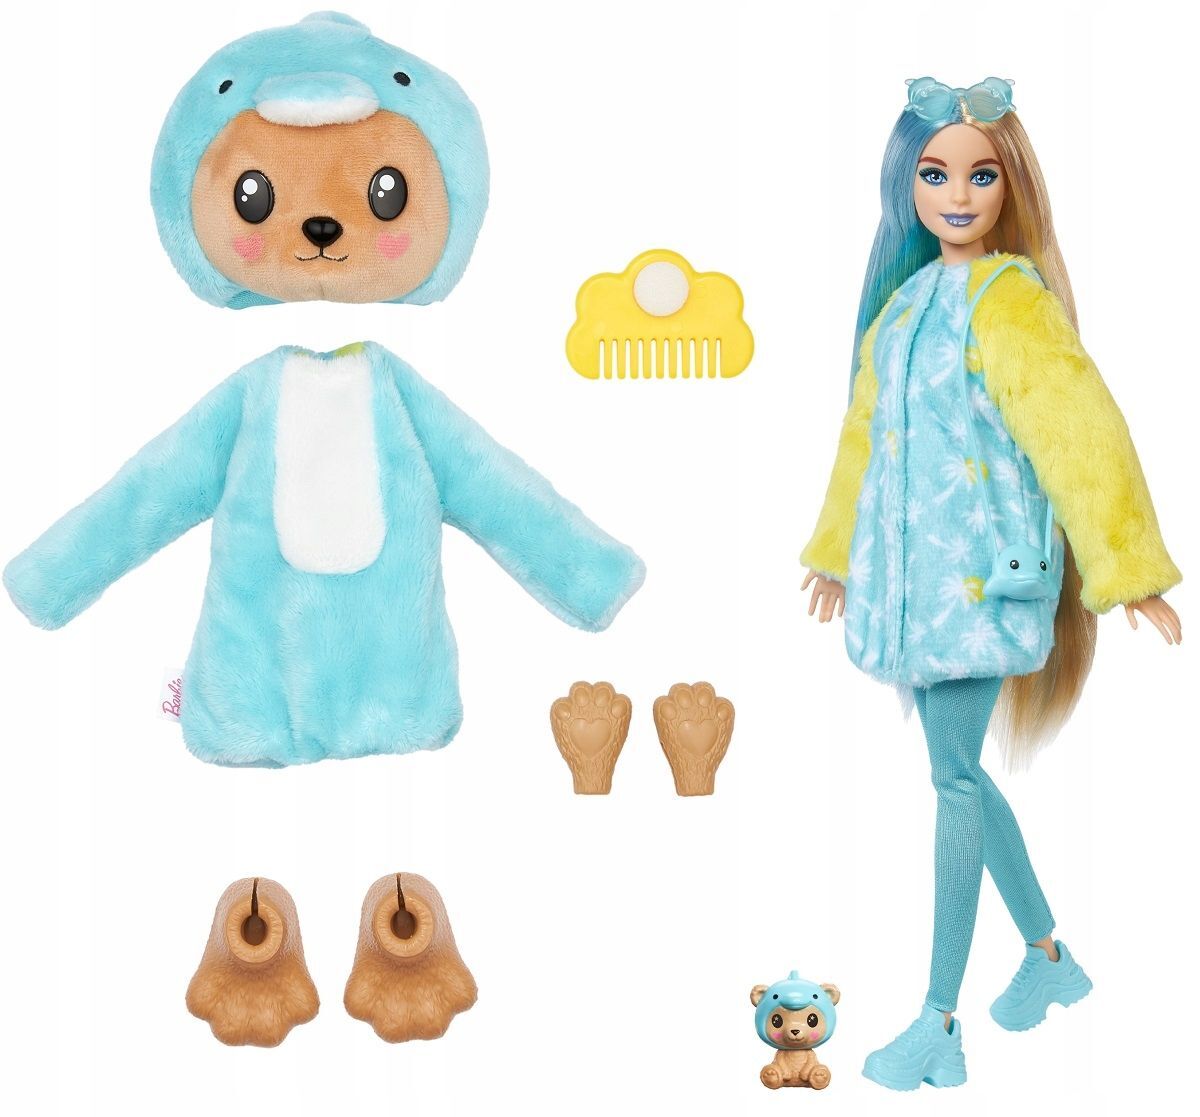 Кукла Barbie Cutie Reveal Dolphin Bear Плюшевый мишка в образе дельфина, HRK25 кукла barbie cutie reveal милашка проявляшка тигр hkp99